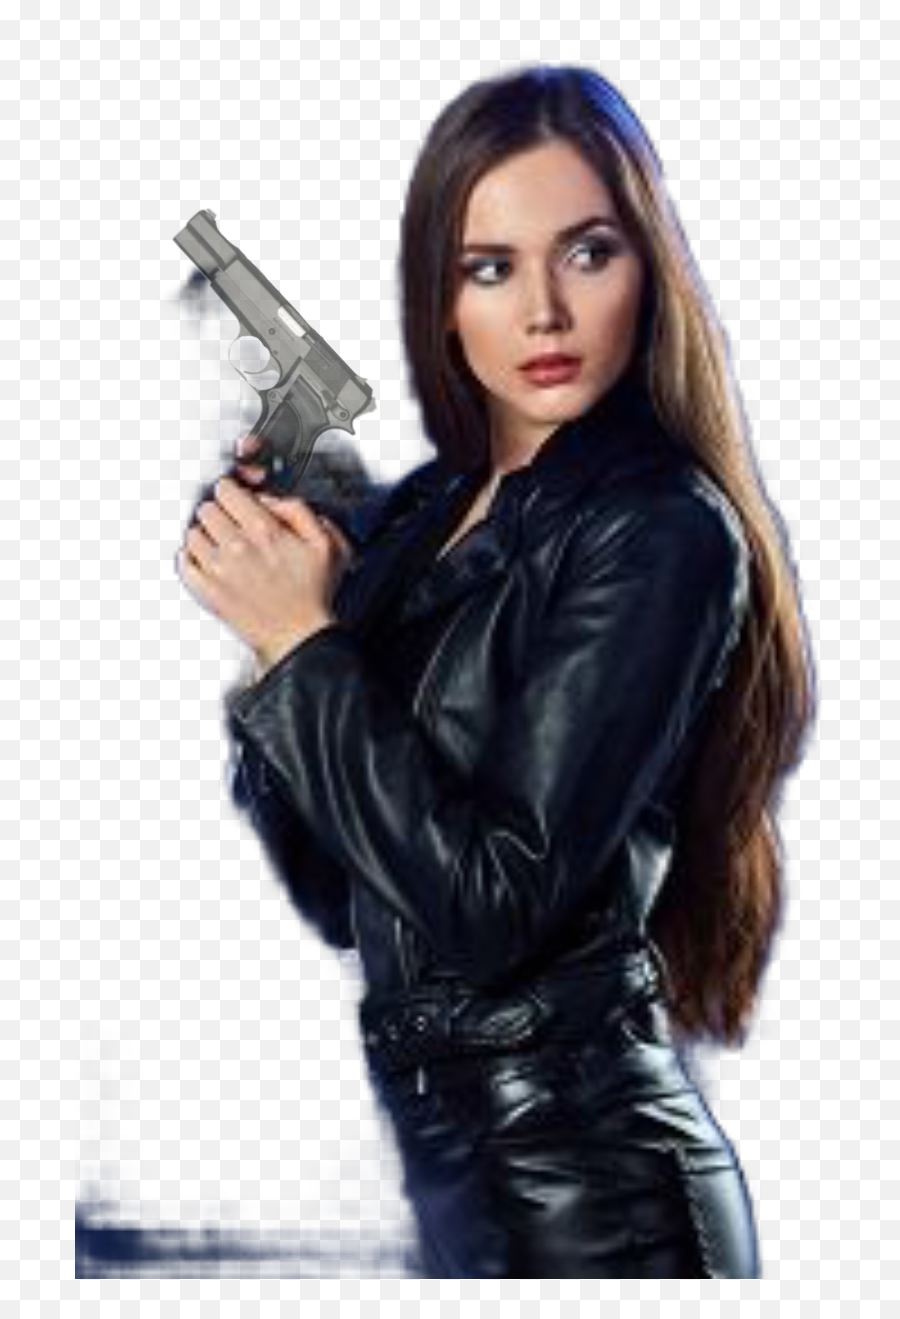 Hd - Gun With Girl Dp Emoji,Holding Gun Png